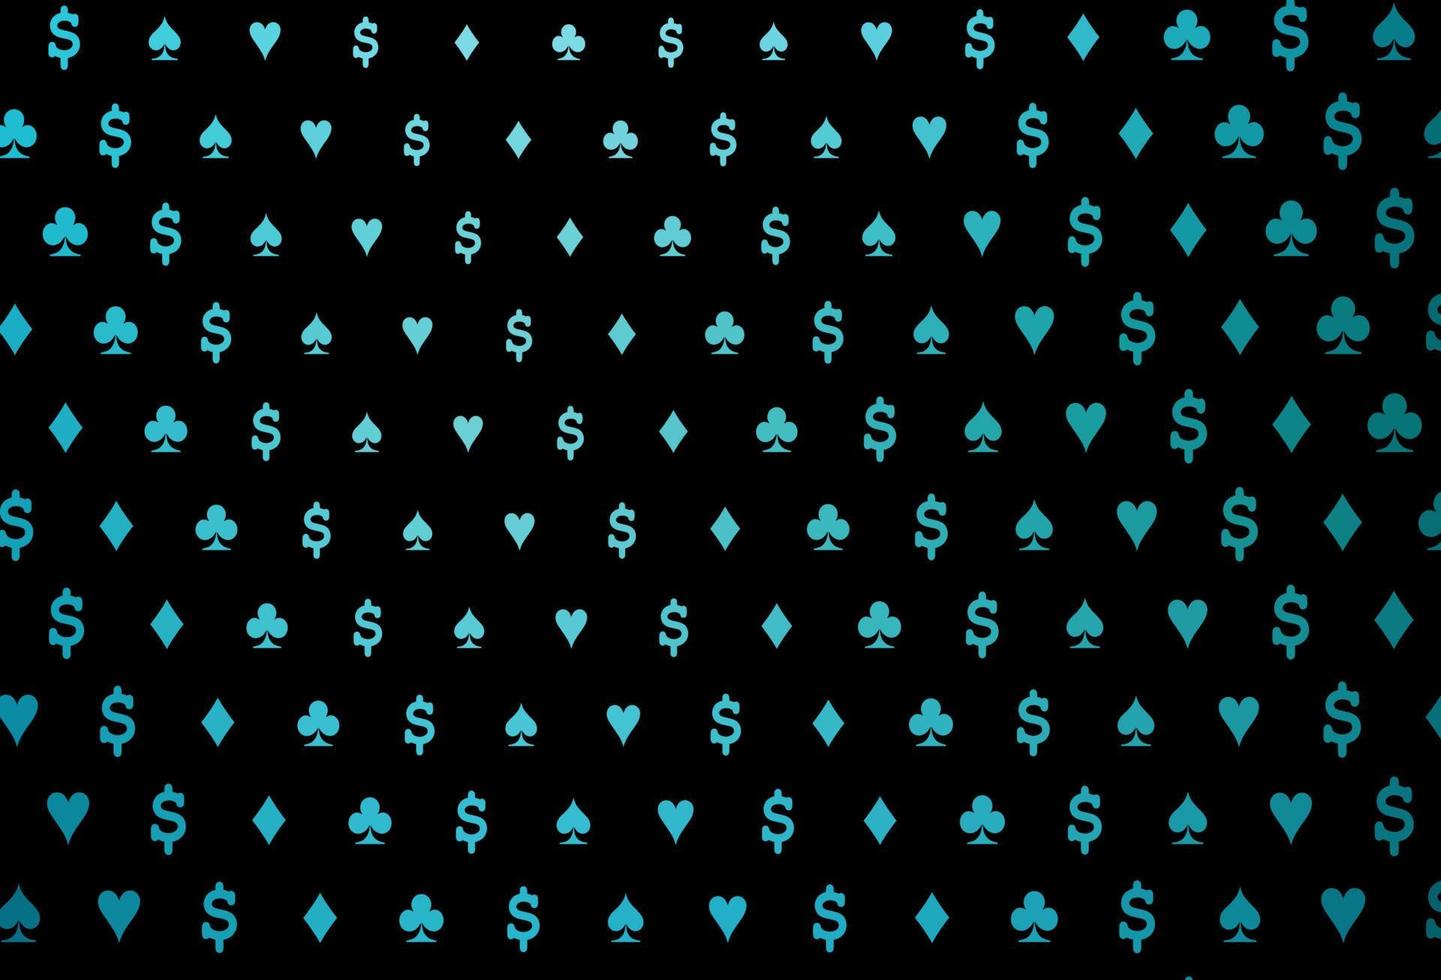 plantilla de vector azul oscuro con símbolos de póquer.